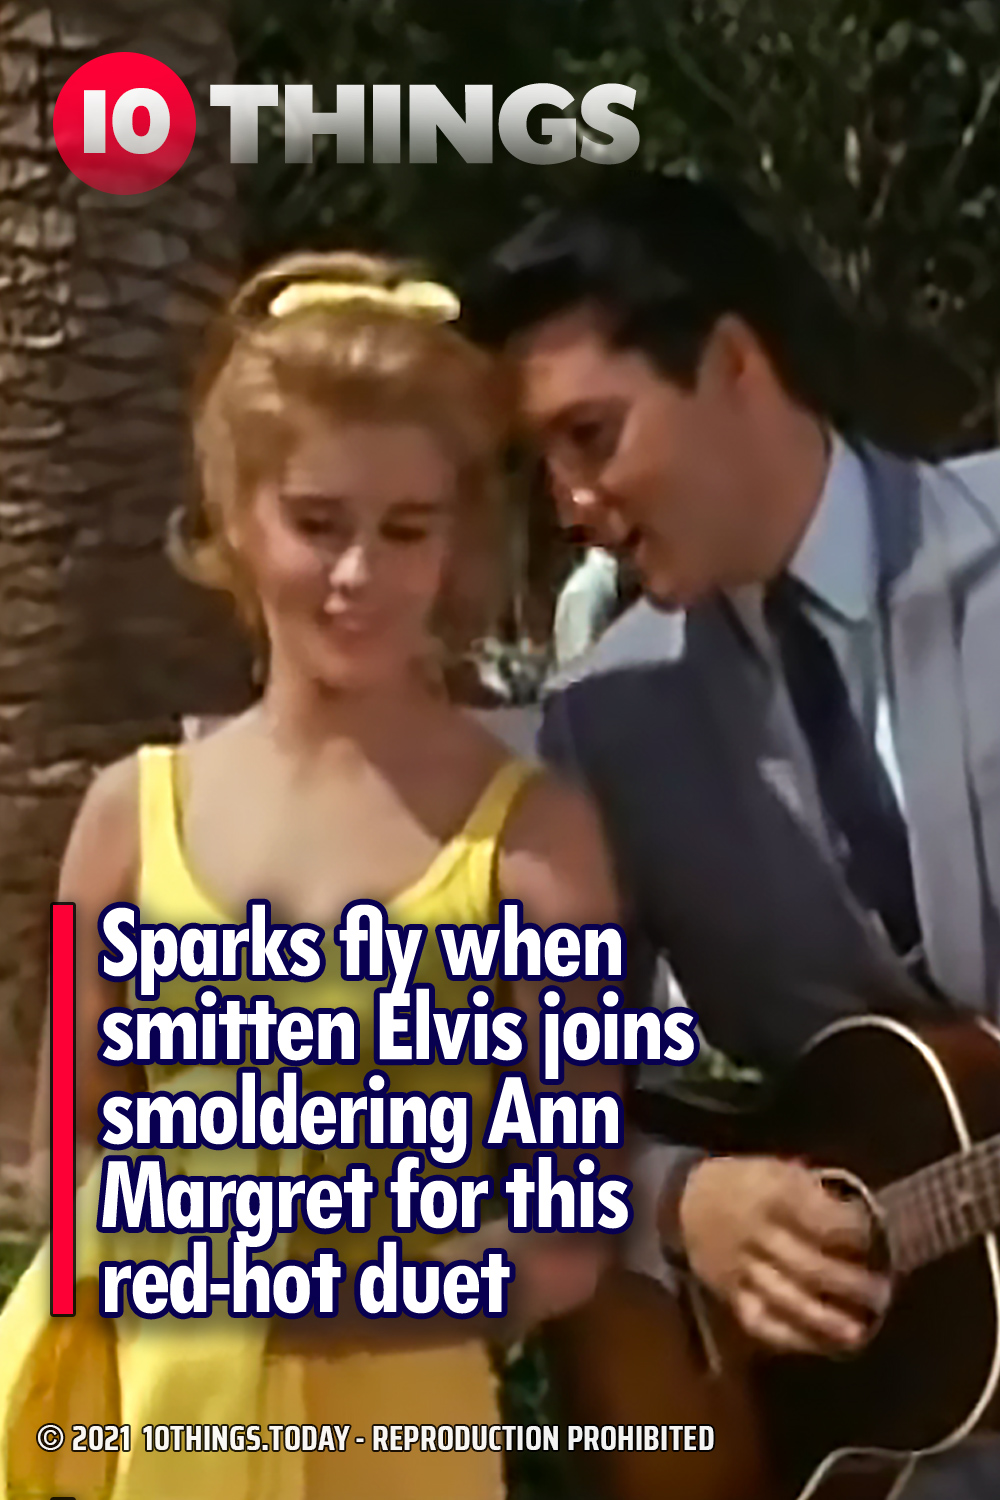 Sparks fly when smitten Elvis joins smoldering Ann Margret for this red-hot duet